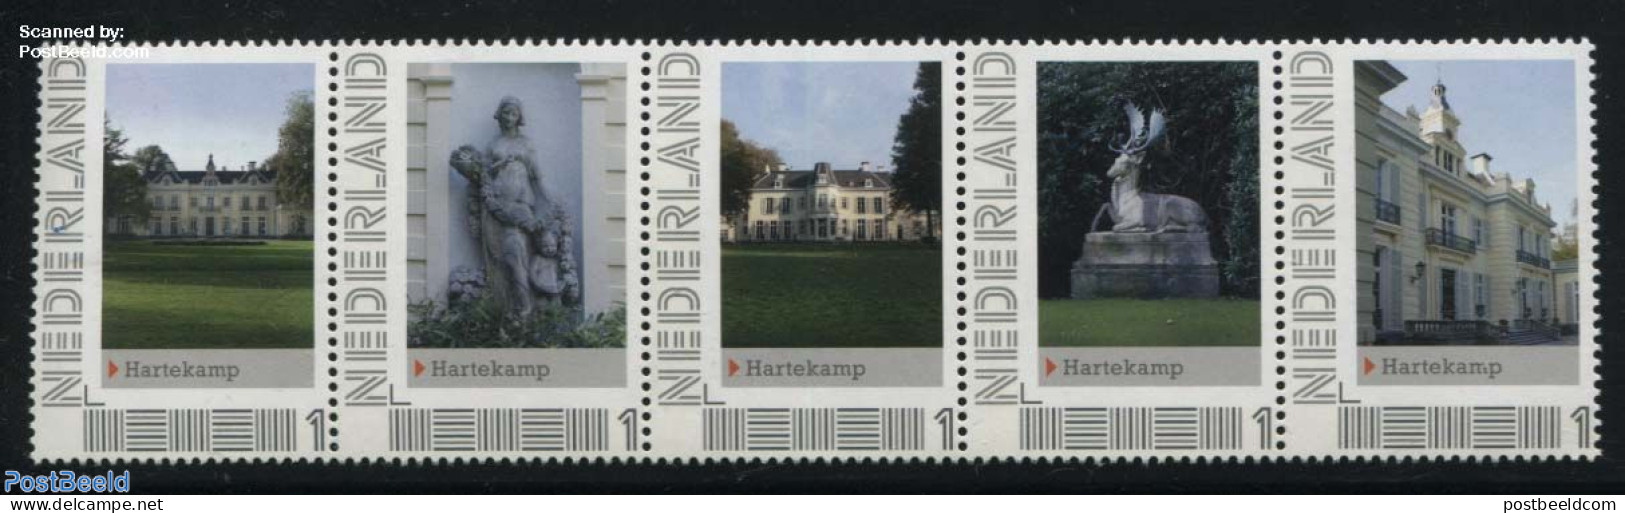 Netherlands - Personal Stamps TNT/PNL 2012 Hartekamp 5v [::::], Mint NH, Castles & Fortifications - Sculpture - Kastelen